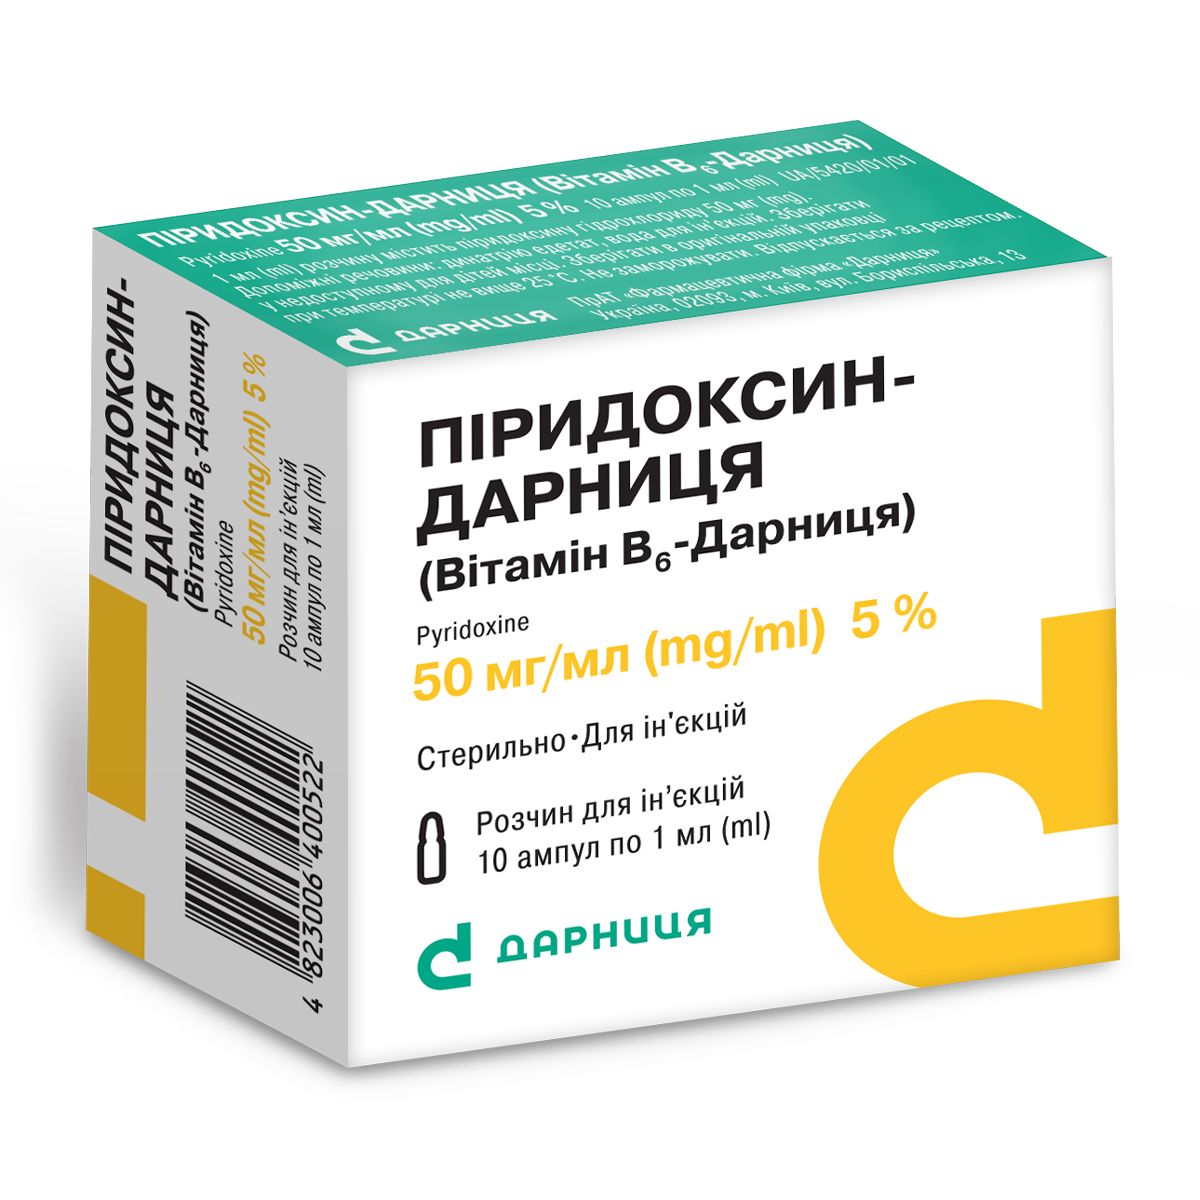 Pyridoxinе-Darnitsa (vitamin B6-Darnitsa)